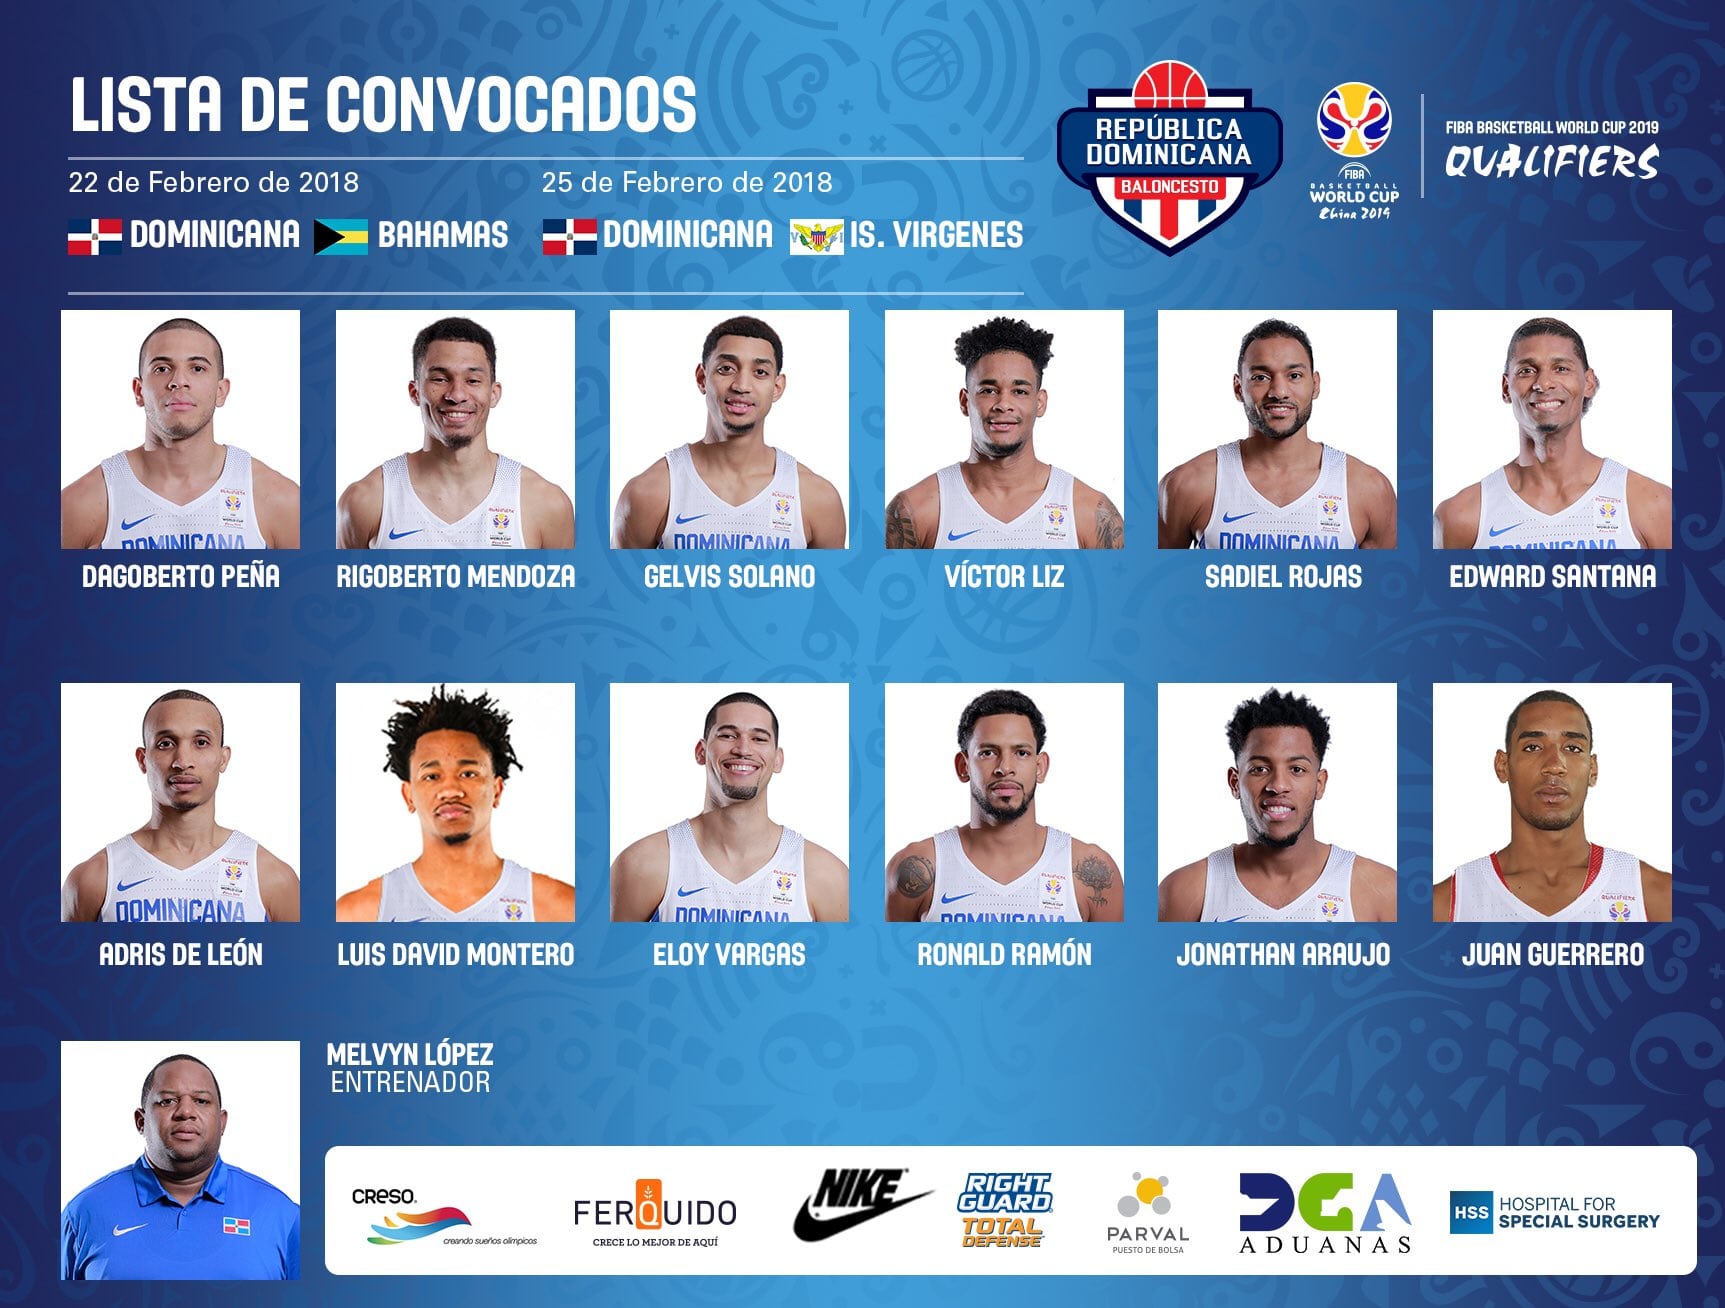 Vicedo, Arteaga (España), Dago Peña (República Dominicana) y Ludde Hakanson (Suecia) repiten en las ventanas FIBA y Darío Brizuela podría debutar con España